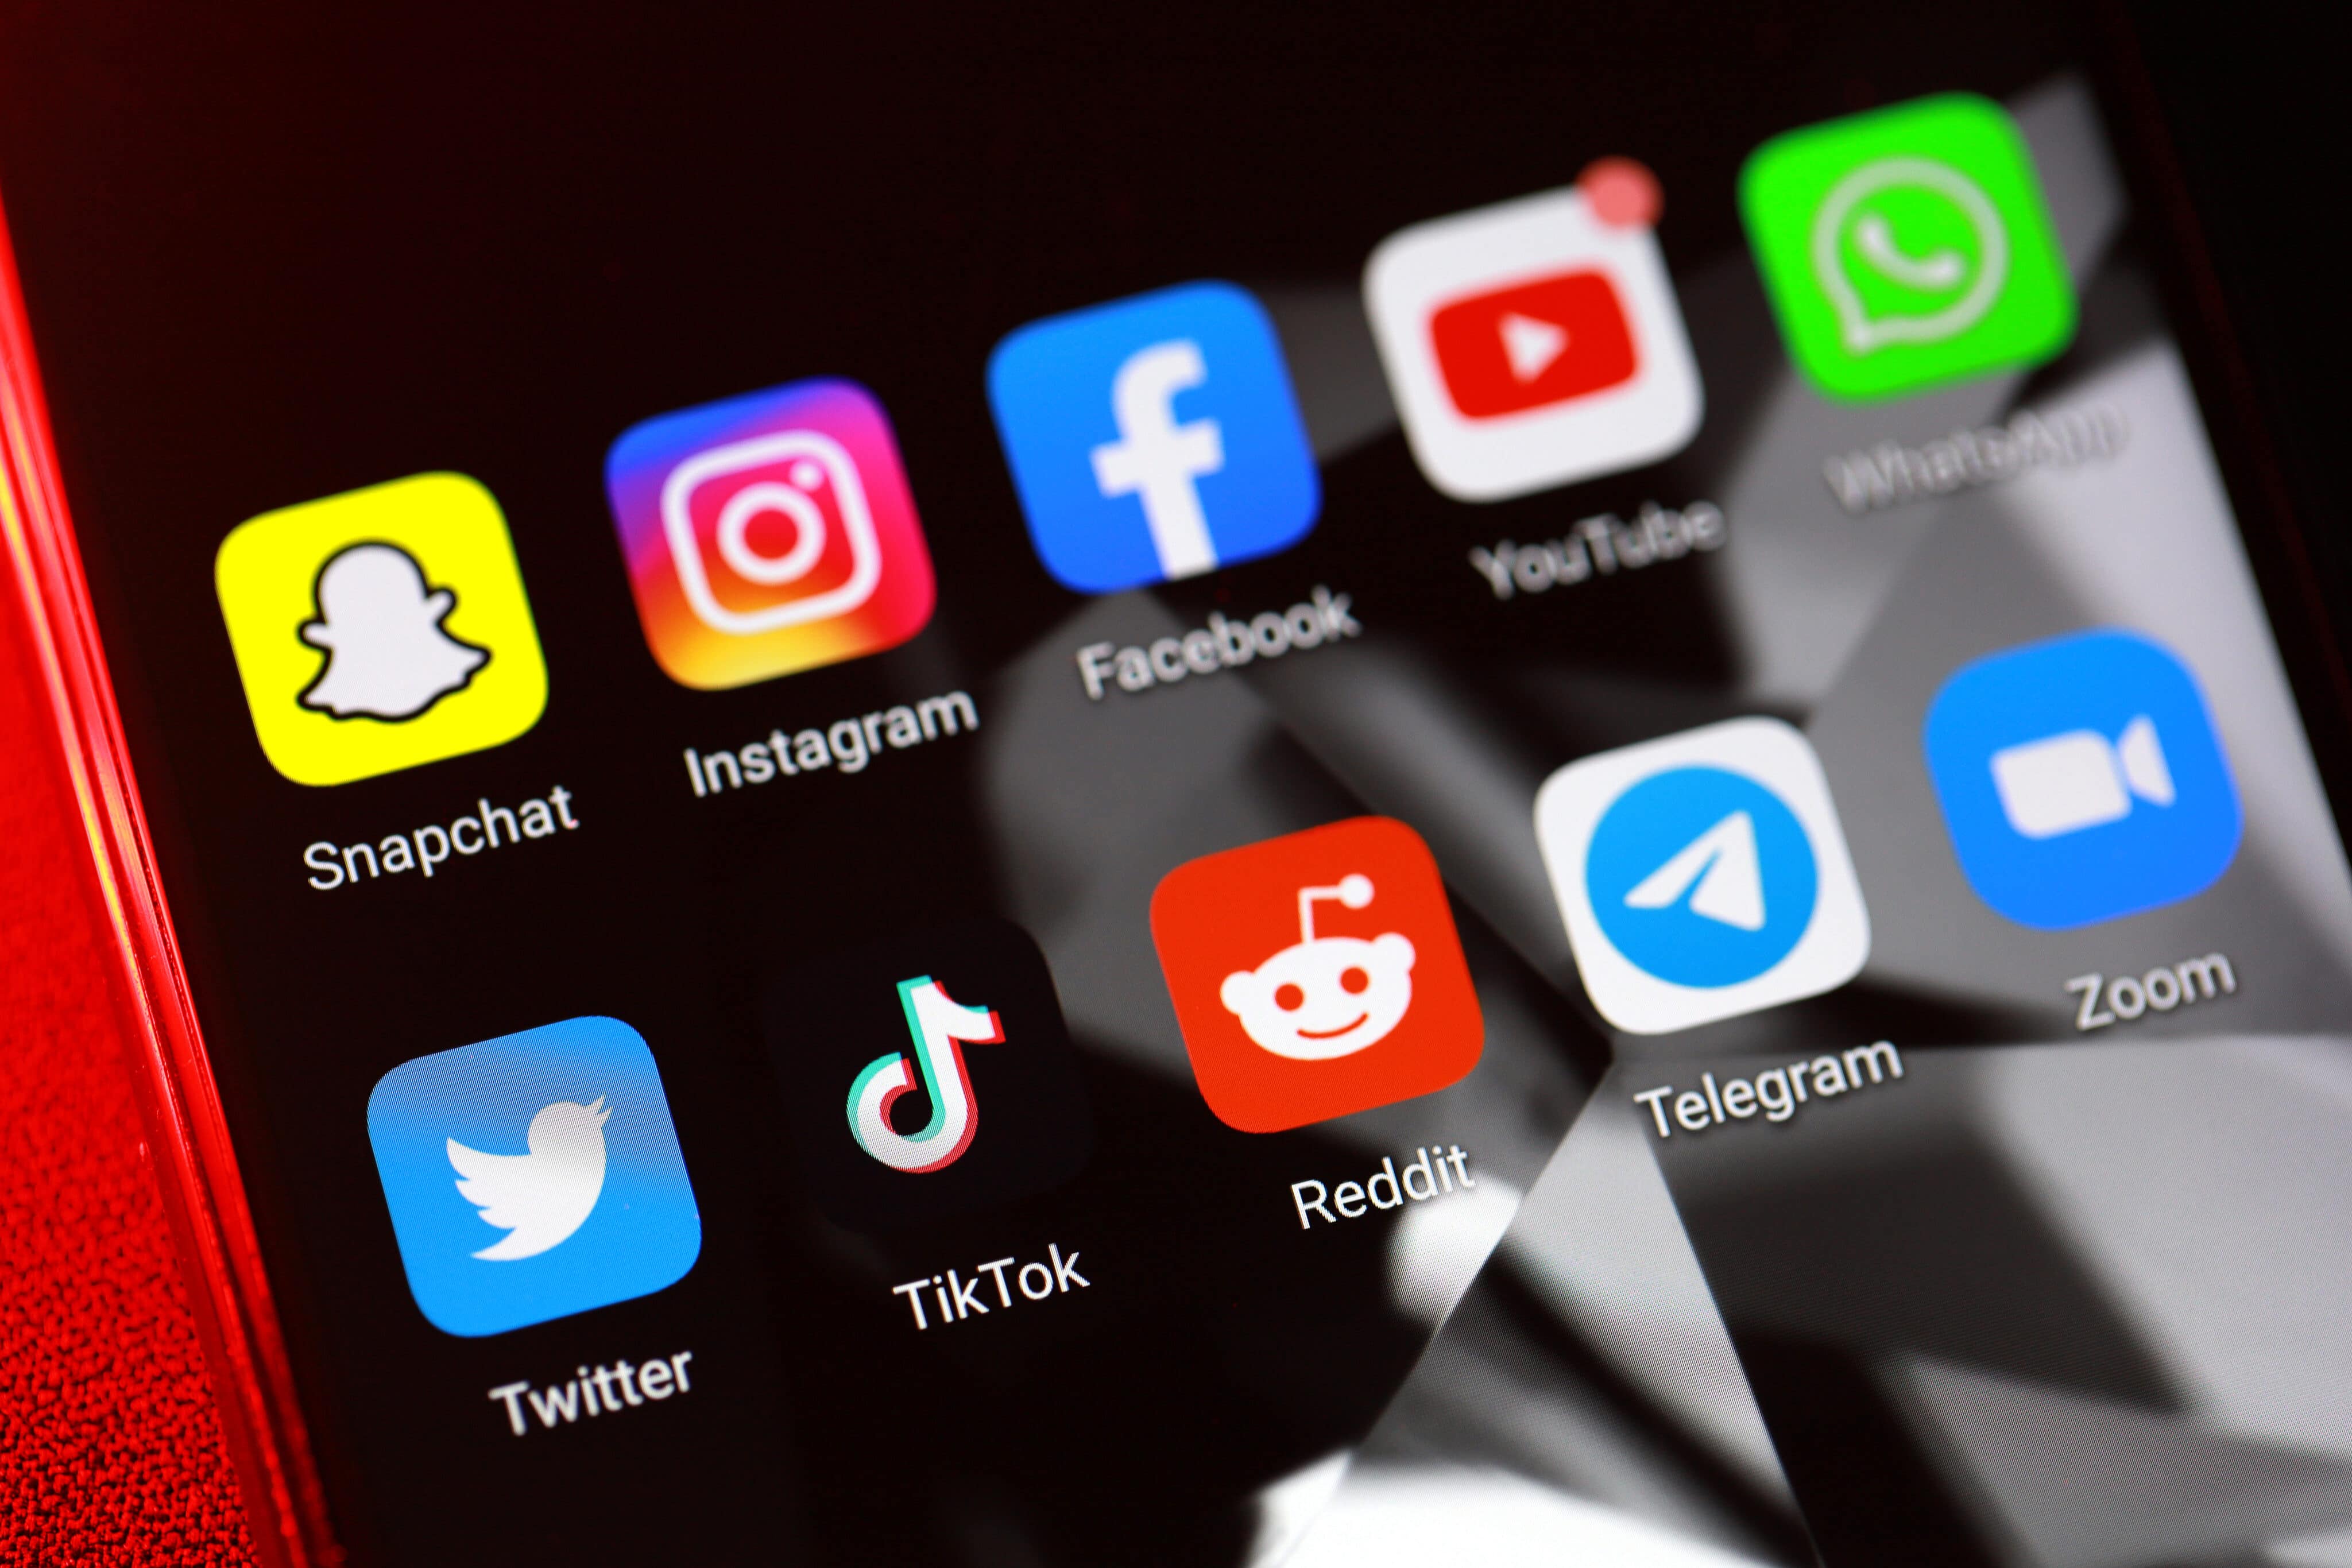 Ícones de apps (Snapchat, Instagram, Facebook, YouTube, WhatsApp, Twitter, TikTok, Reddit, Telegram e Zoom)